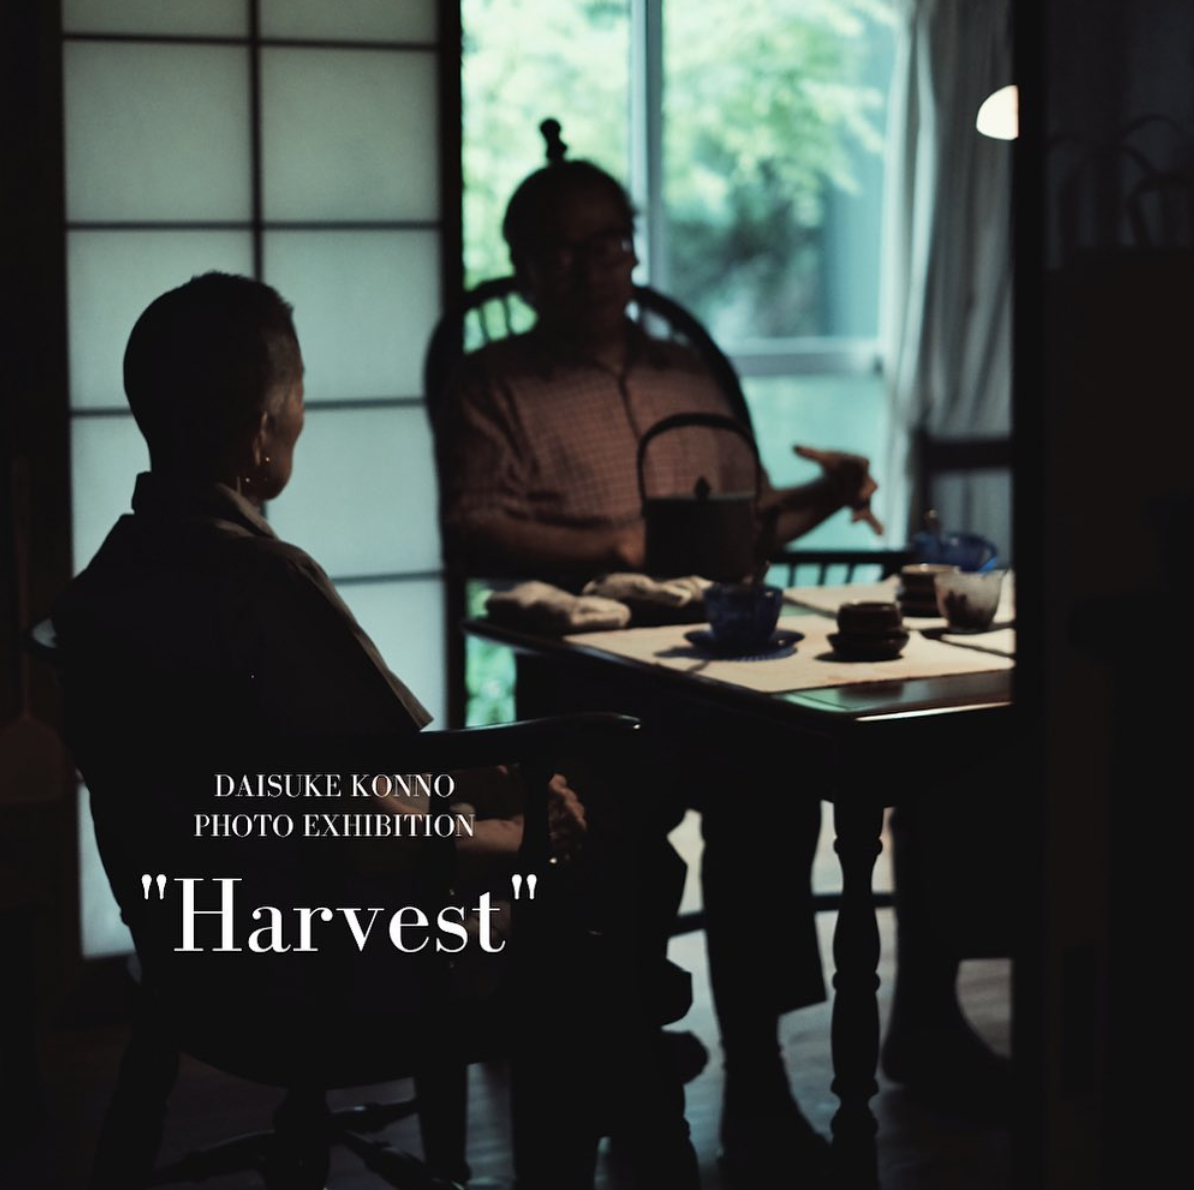 「くふや くわづ」出版記念写真展 “Harvest” 開催のお知らせ。